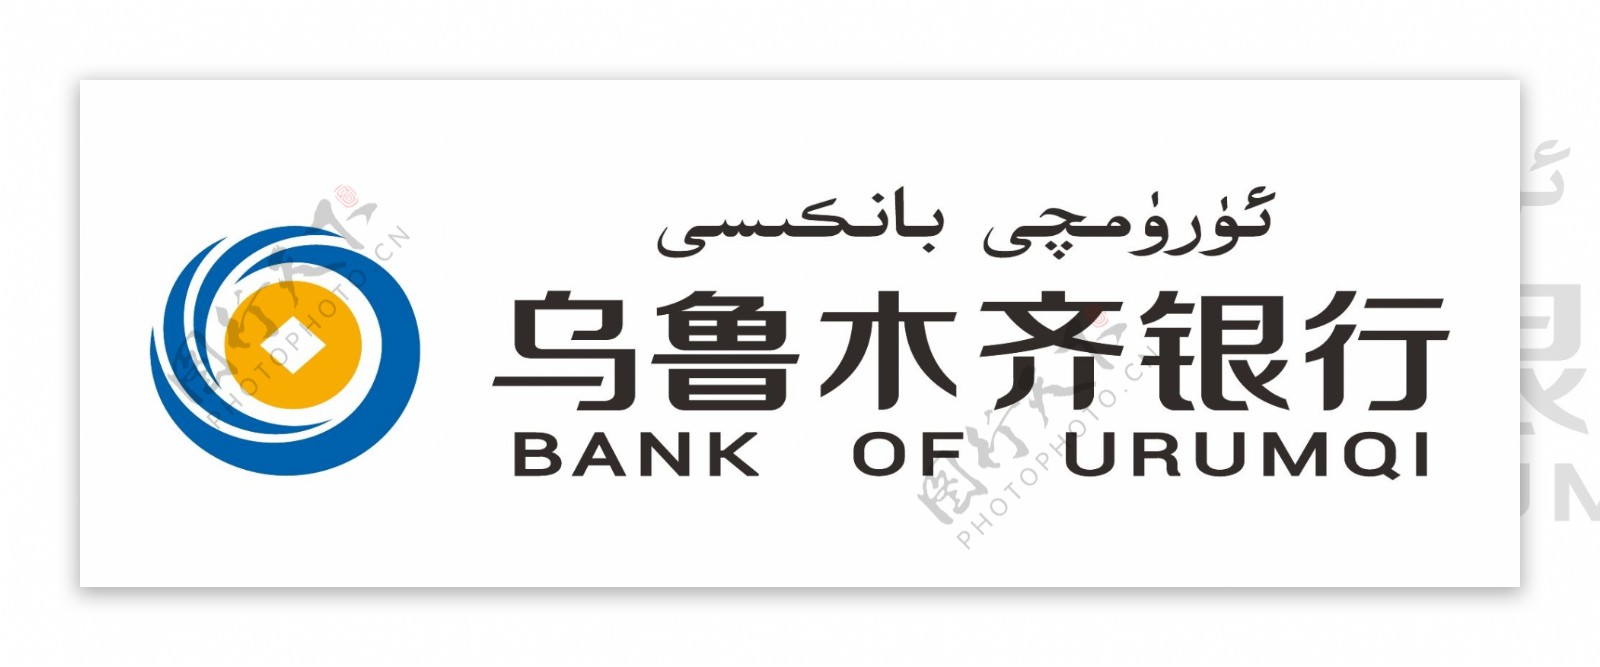 乌鲁木齐银行标识LOGO银行